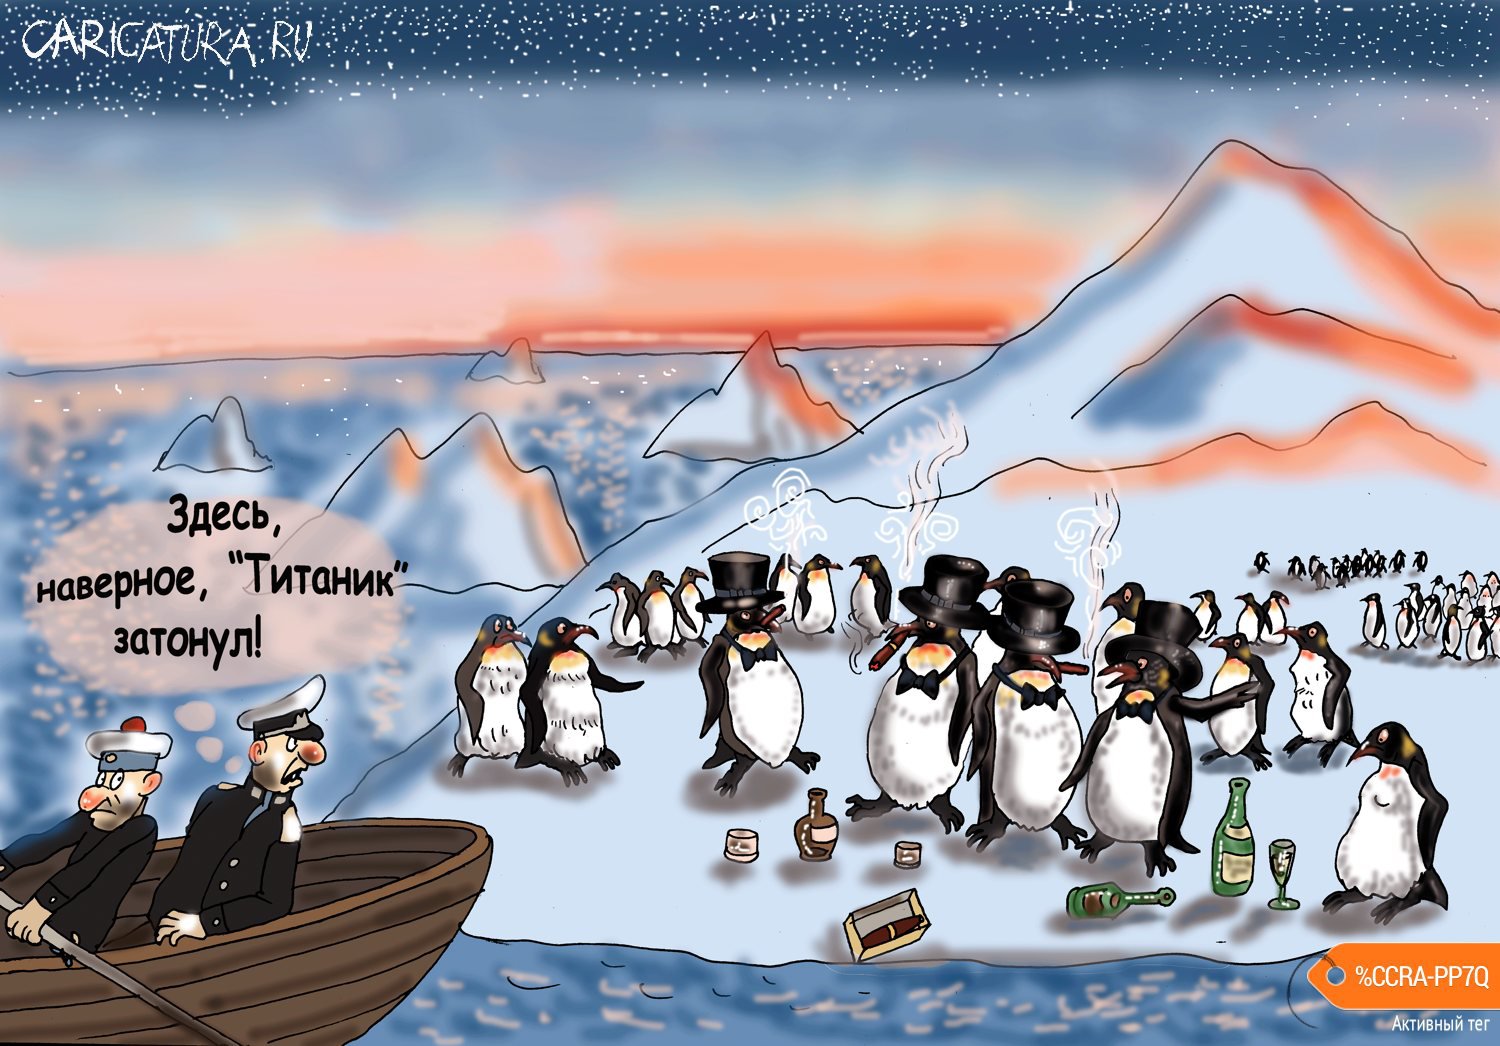 Карикатура "Пингвины", Булат Ирсаев